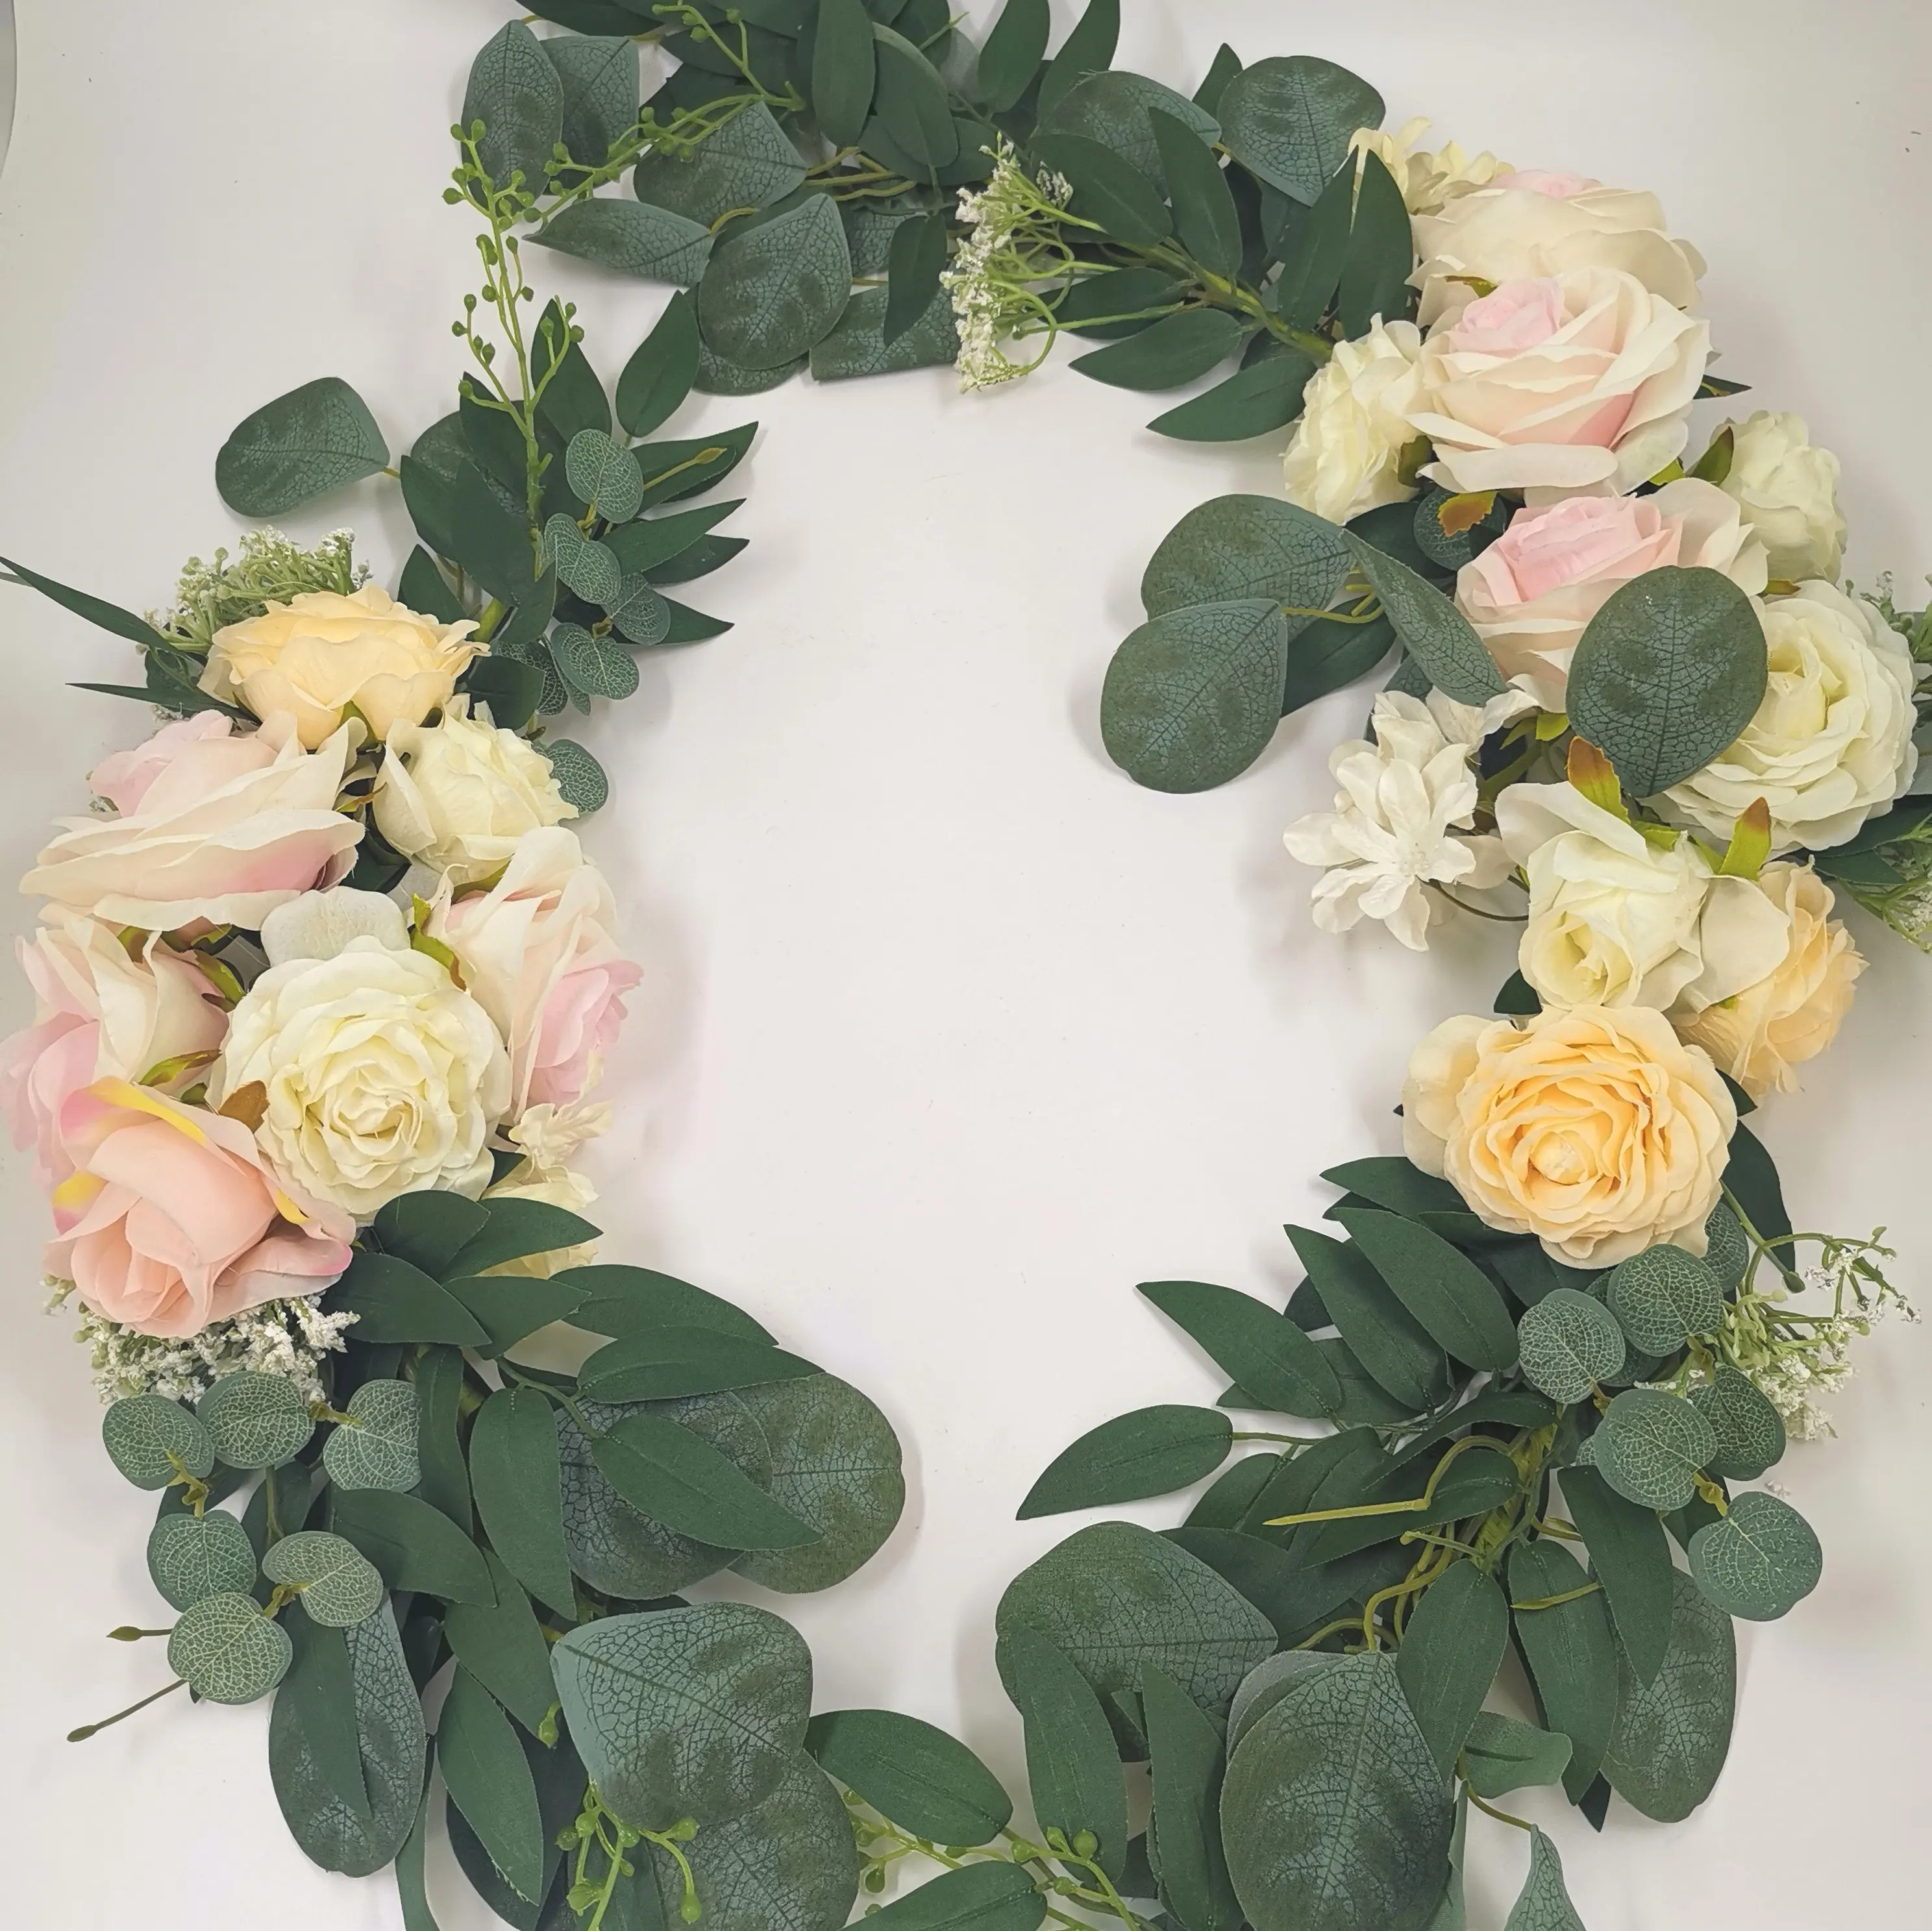 Dekorasi tengah meja sentuhan asli kualitas tinggi buket bunga buatan sutra mawar bunga pernikahan mawar sutra bunga besar